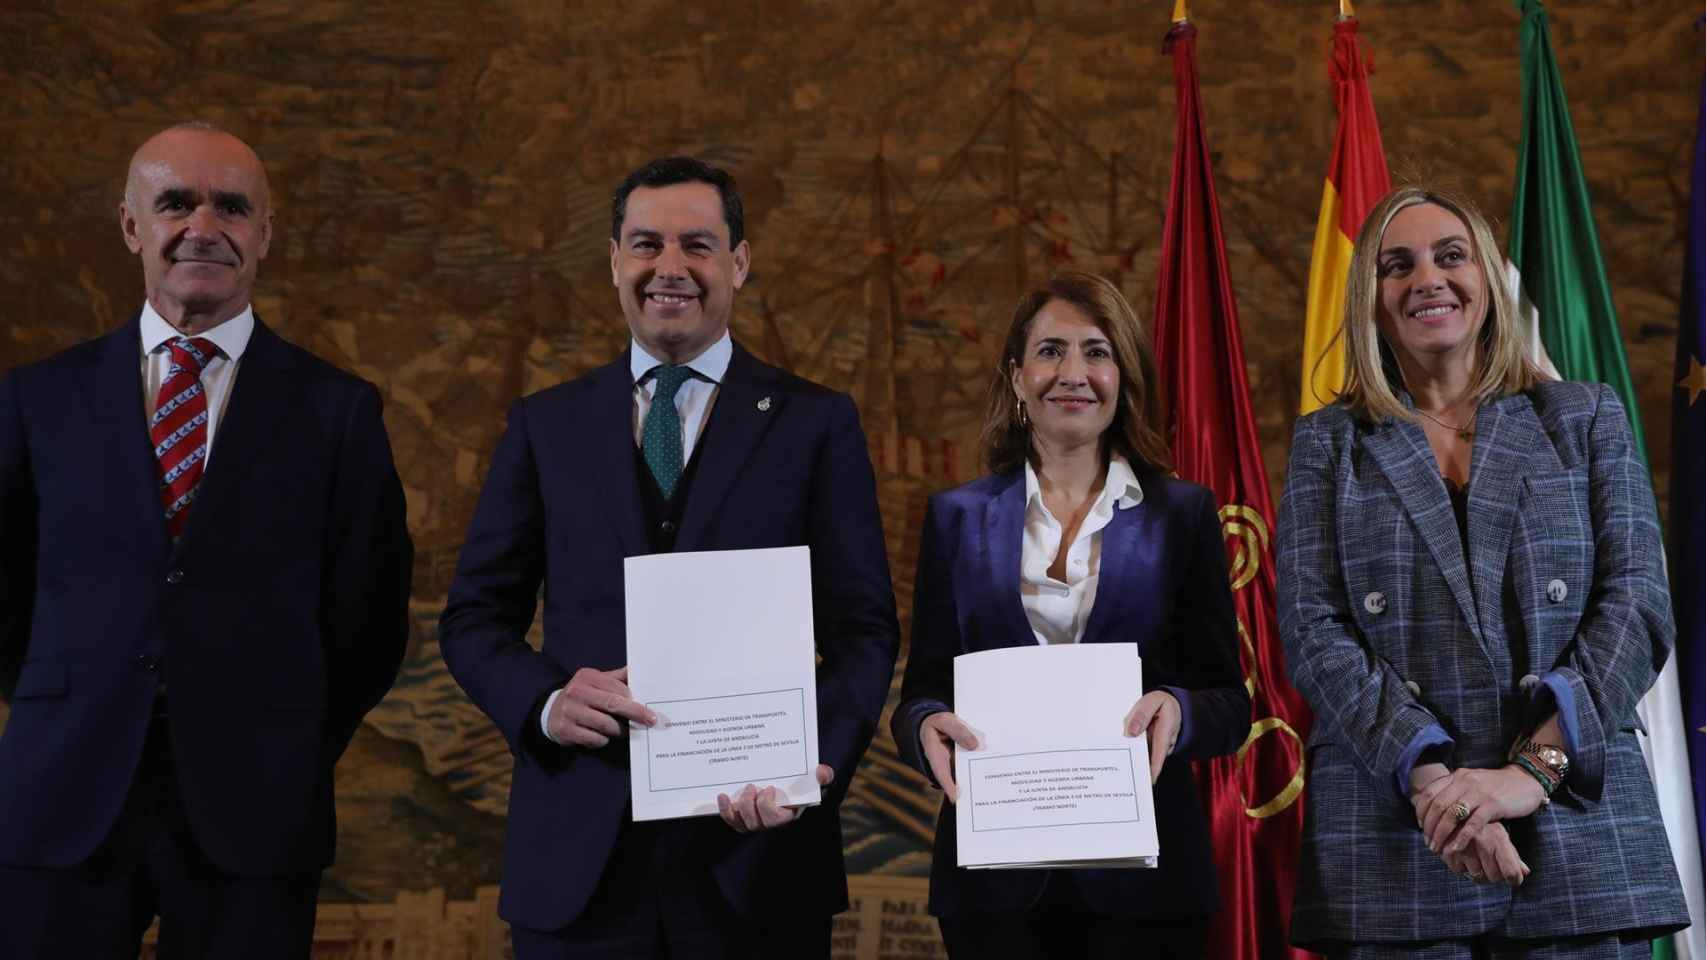 El alcalde de Sevilla, Antonio Muñoz, junto al presidente de la Junta, Juanma Moreno, y la ministra de Transporte, Raquel Sánchez.